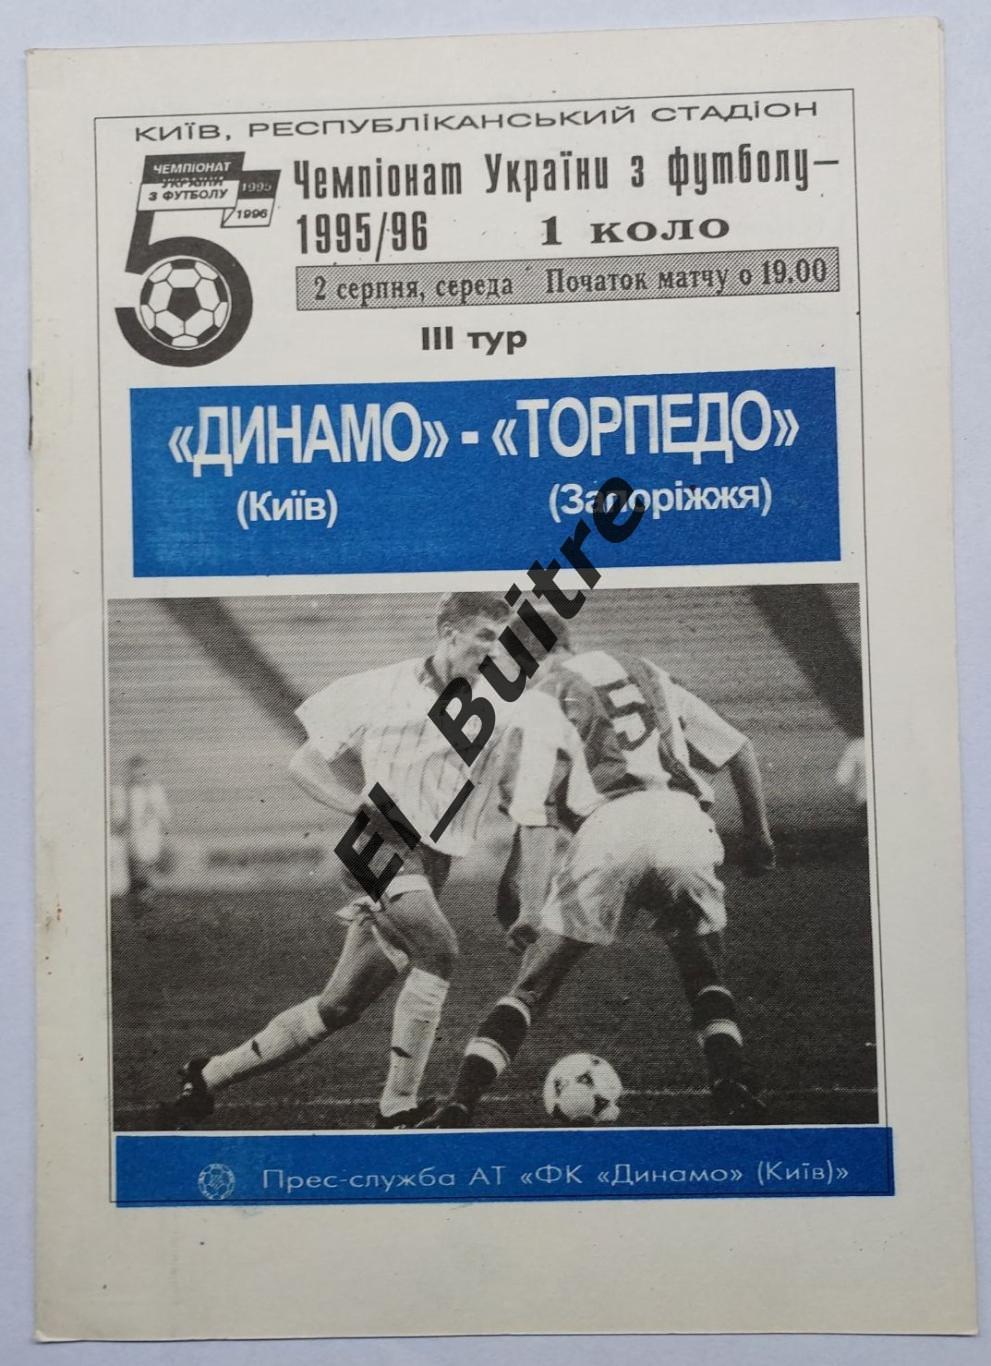 02.08.1995. Динамо (Киев) - Торпедо (Запорожье). Чемпионат Украины 1995/96.